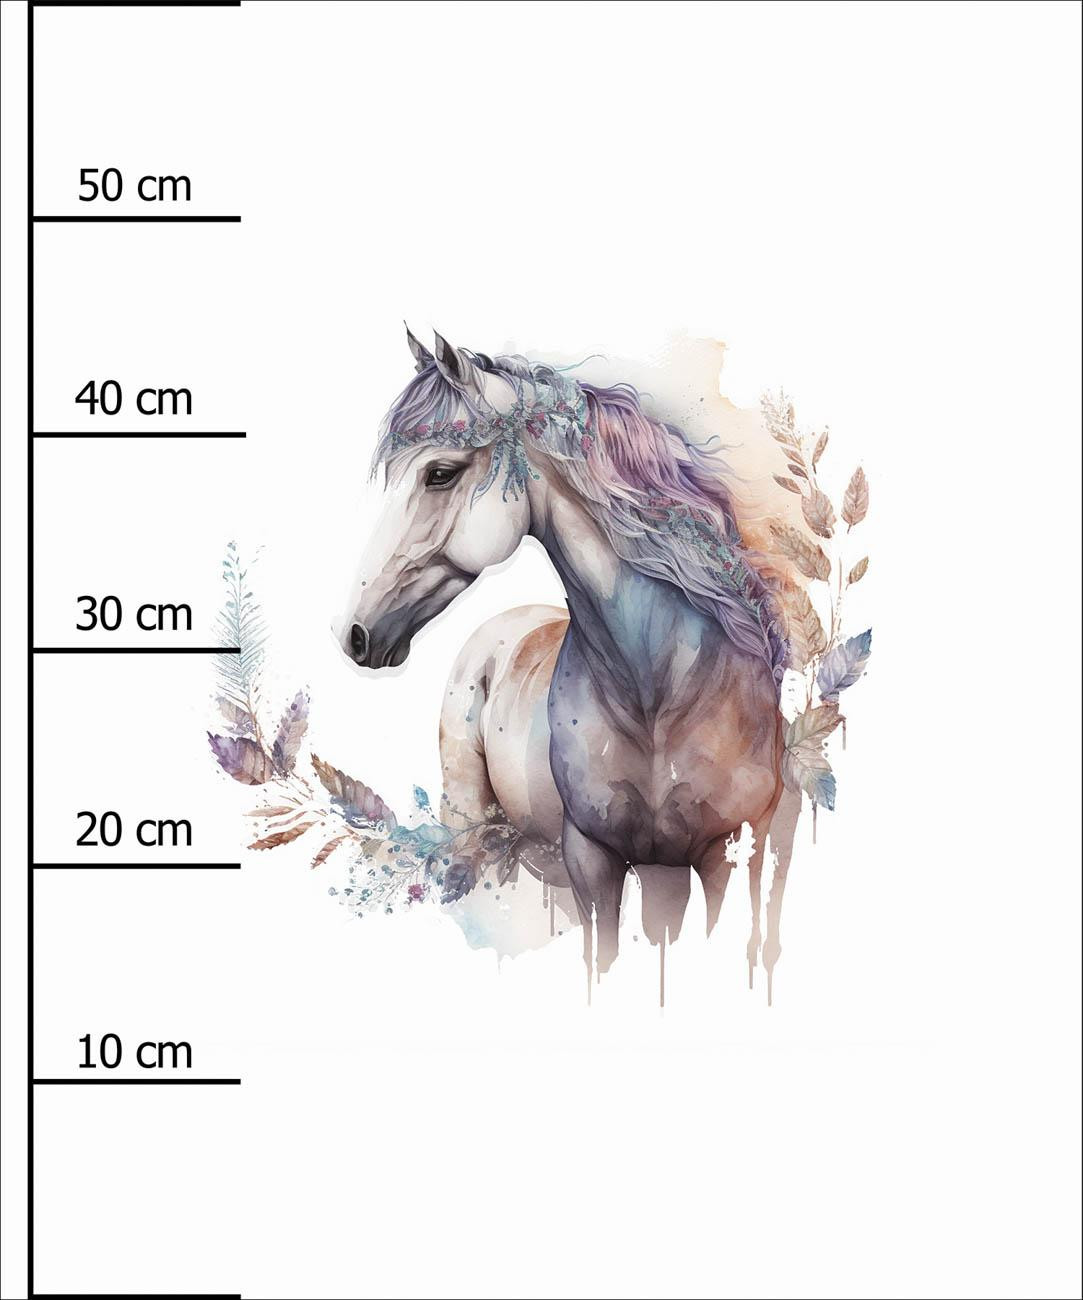 WATERCOLOR HORSE - Paneel (60cm x 50cm)